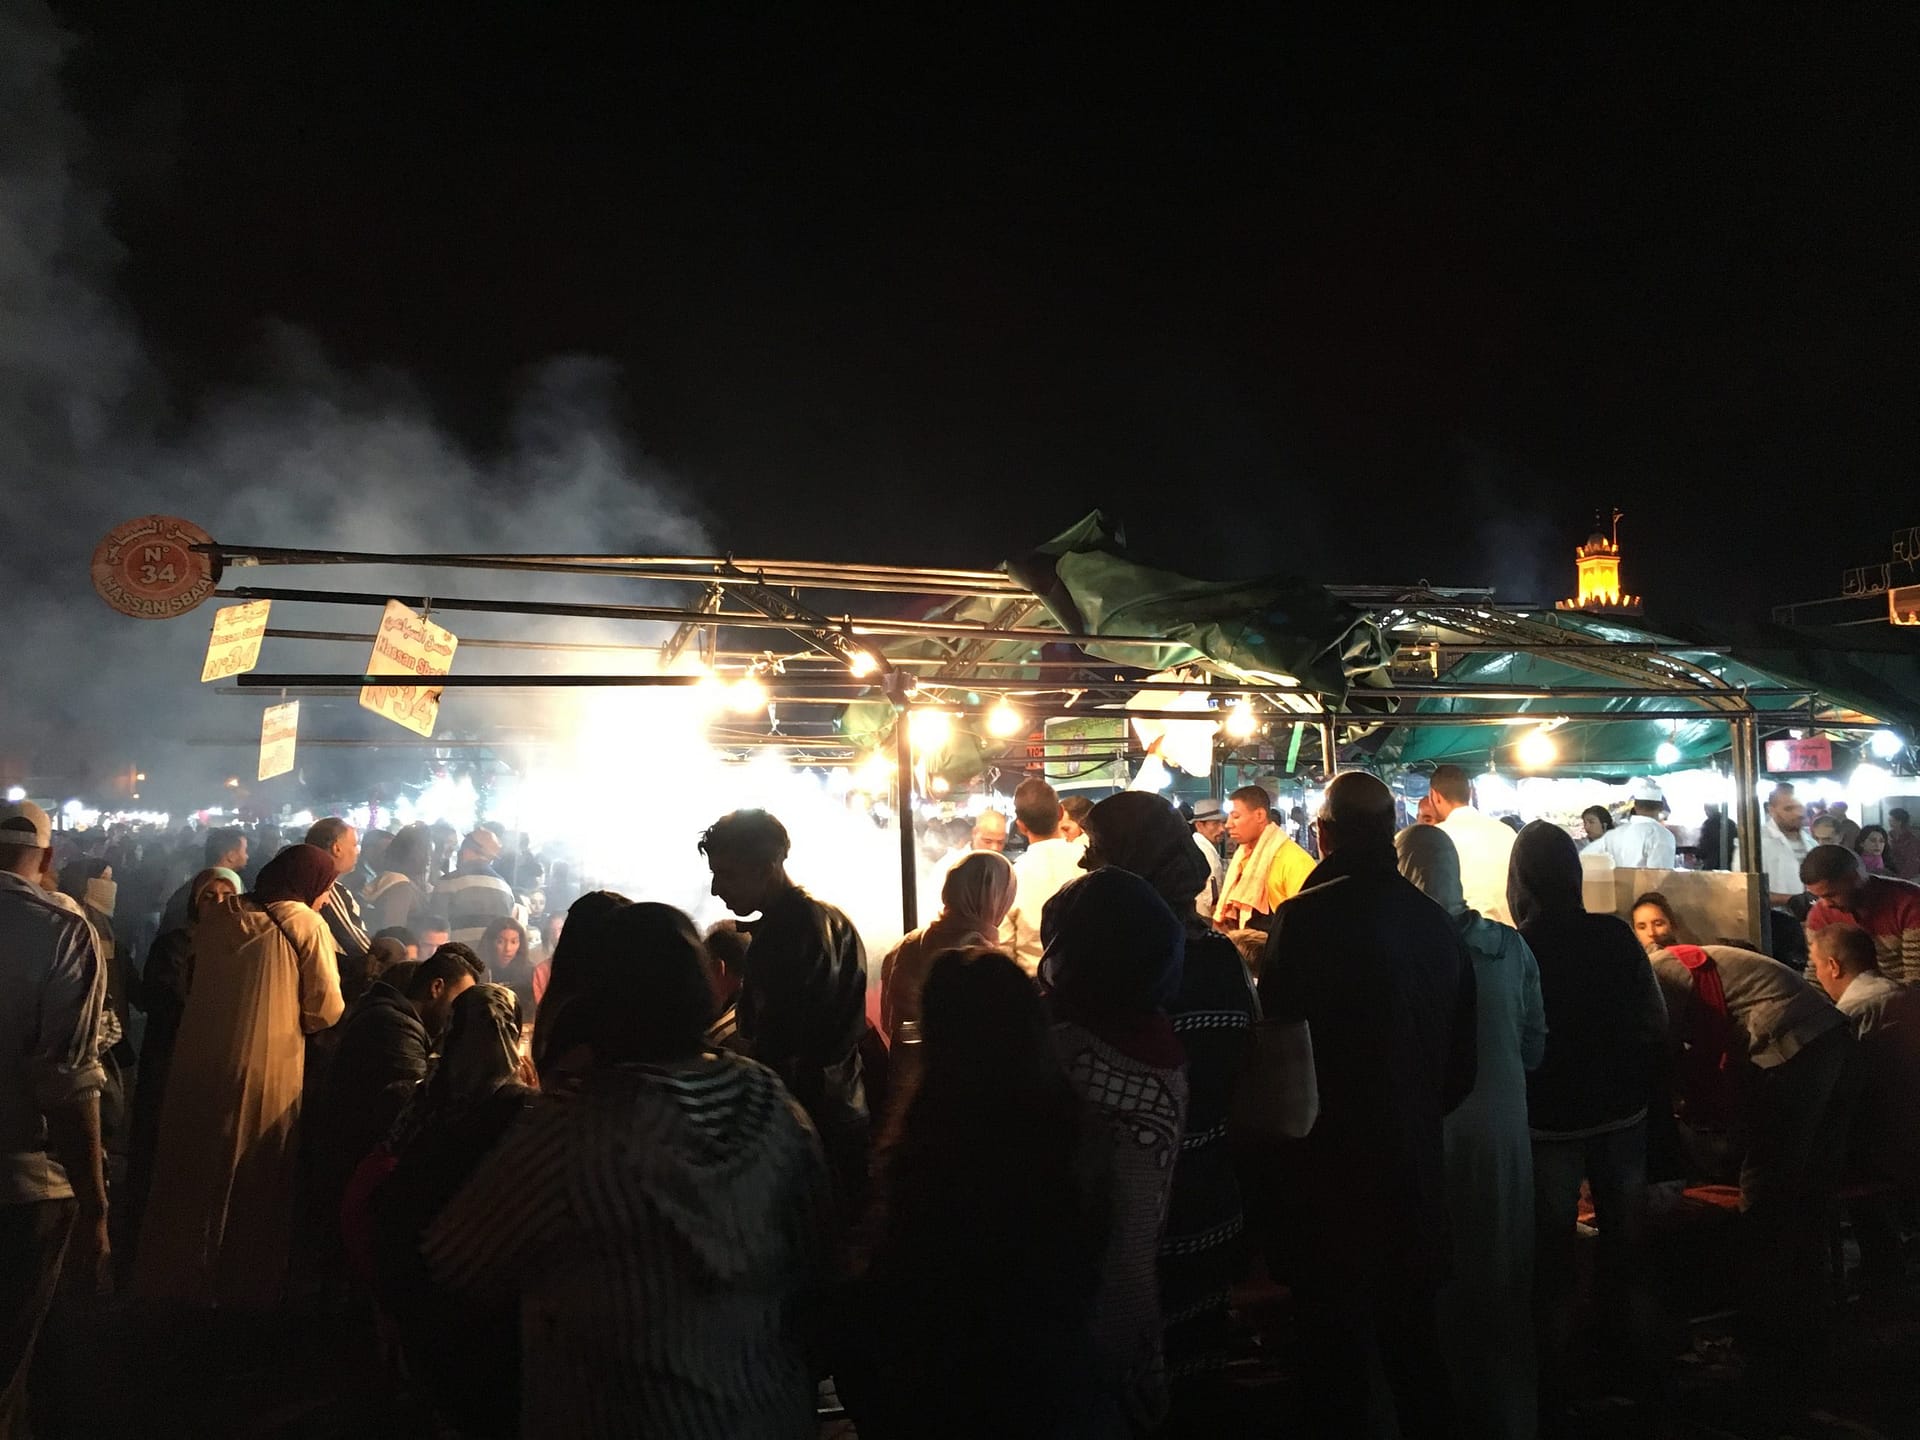 Markt mit Dampfküchen in Marrakesch bei Nacht